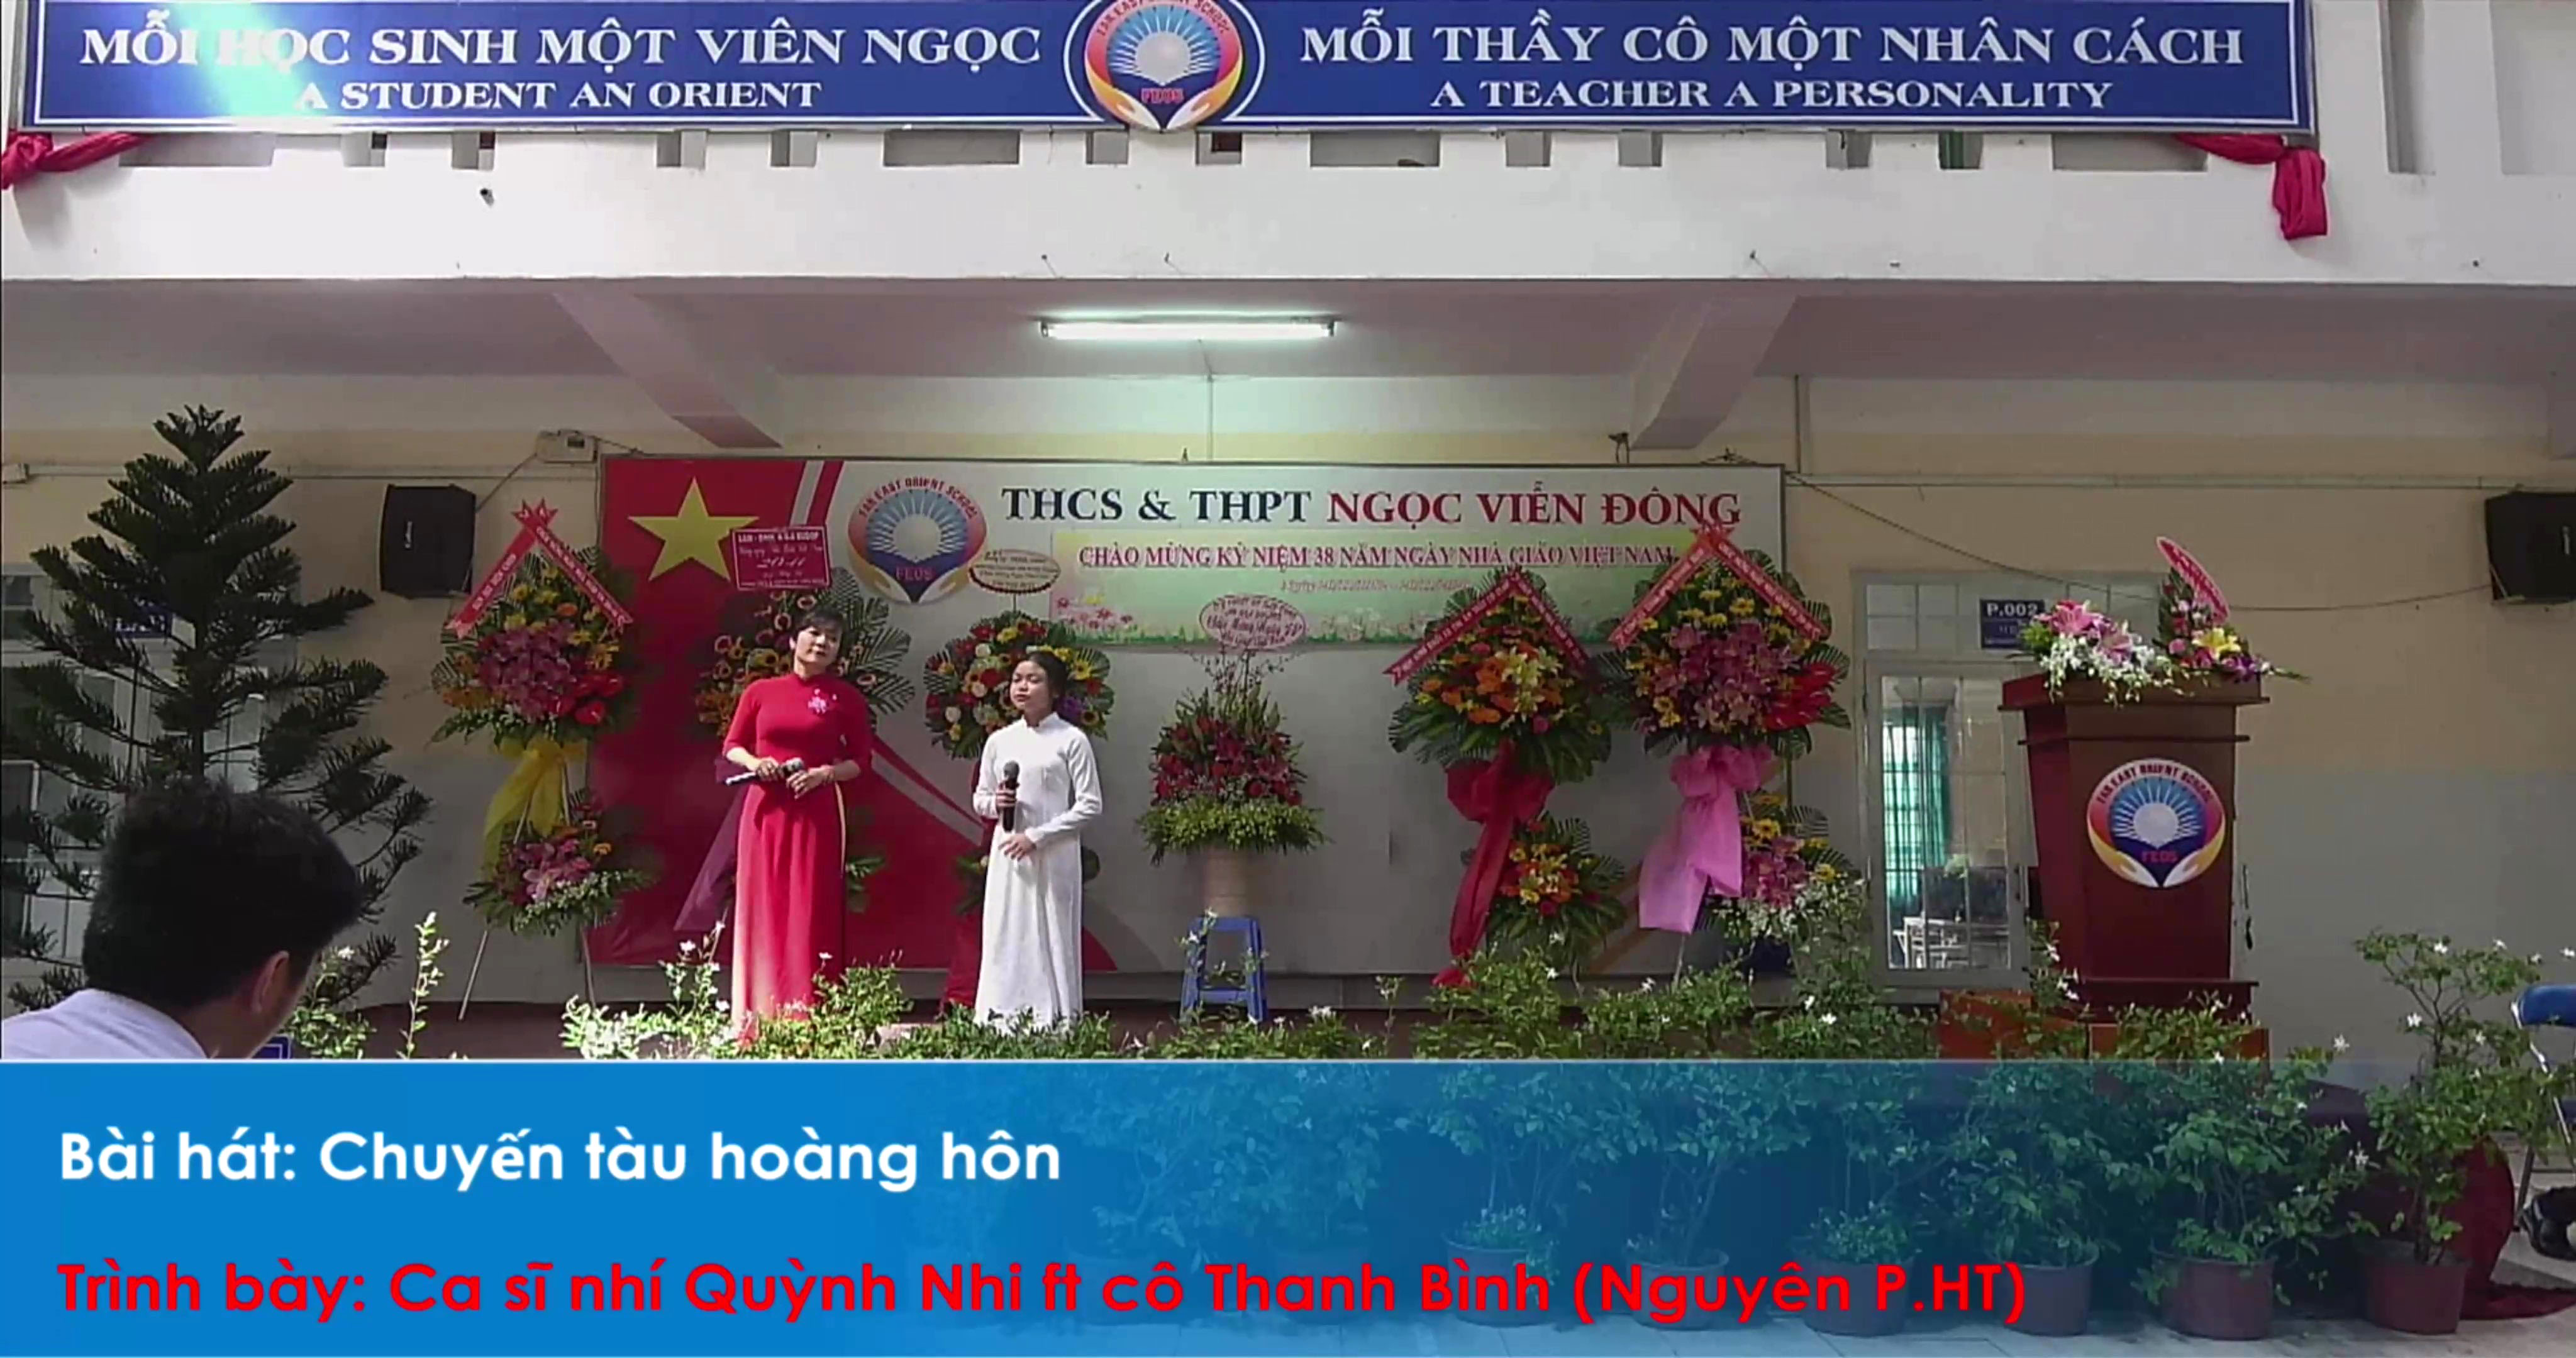 Chuyến Tàu Hoàng Hôn - Ca sĩ nhí Quỳnh Nhi học sinh lớp 10A ft cô Thanh Bình trường THCS và THPT Ngọc Viễn Đông